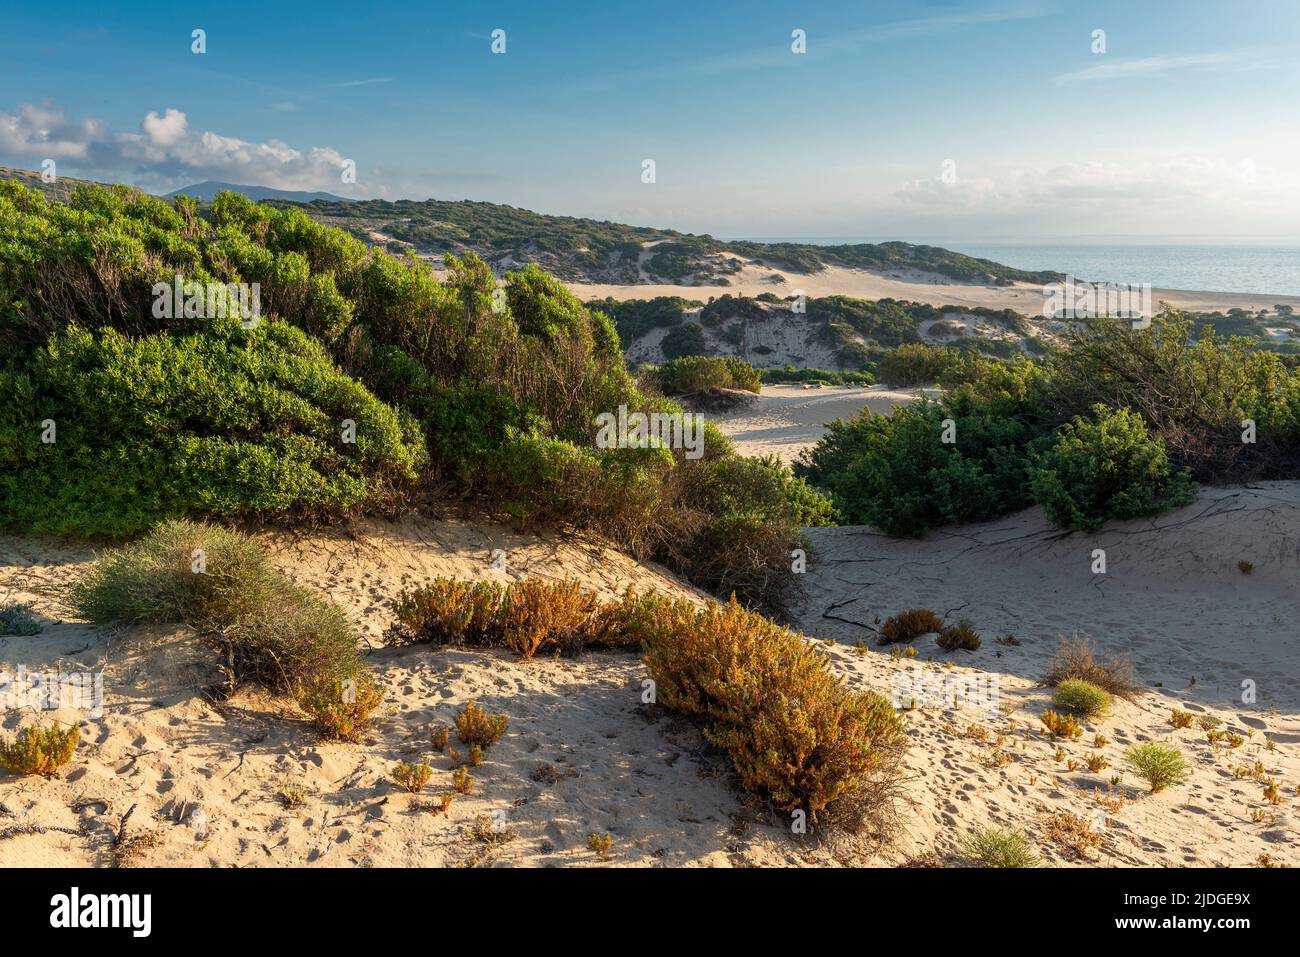 Vista sobre la reserva natural de dunas de arena en la playa de Piscinas en la costa del Mar Mediterráneo, Costa Verde en el cálido sol de la tarde, Cerdeña, Italia Foto de stock